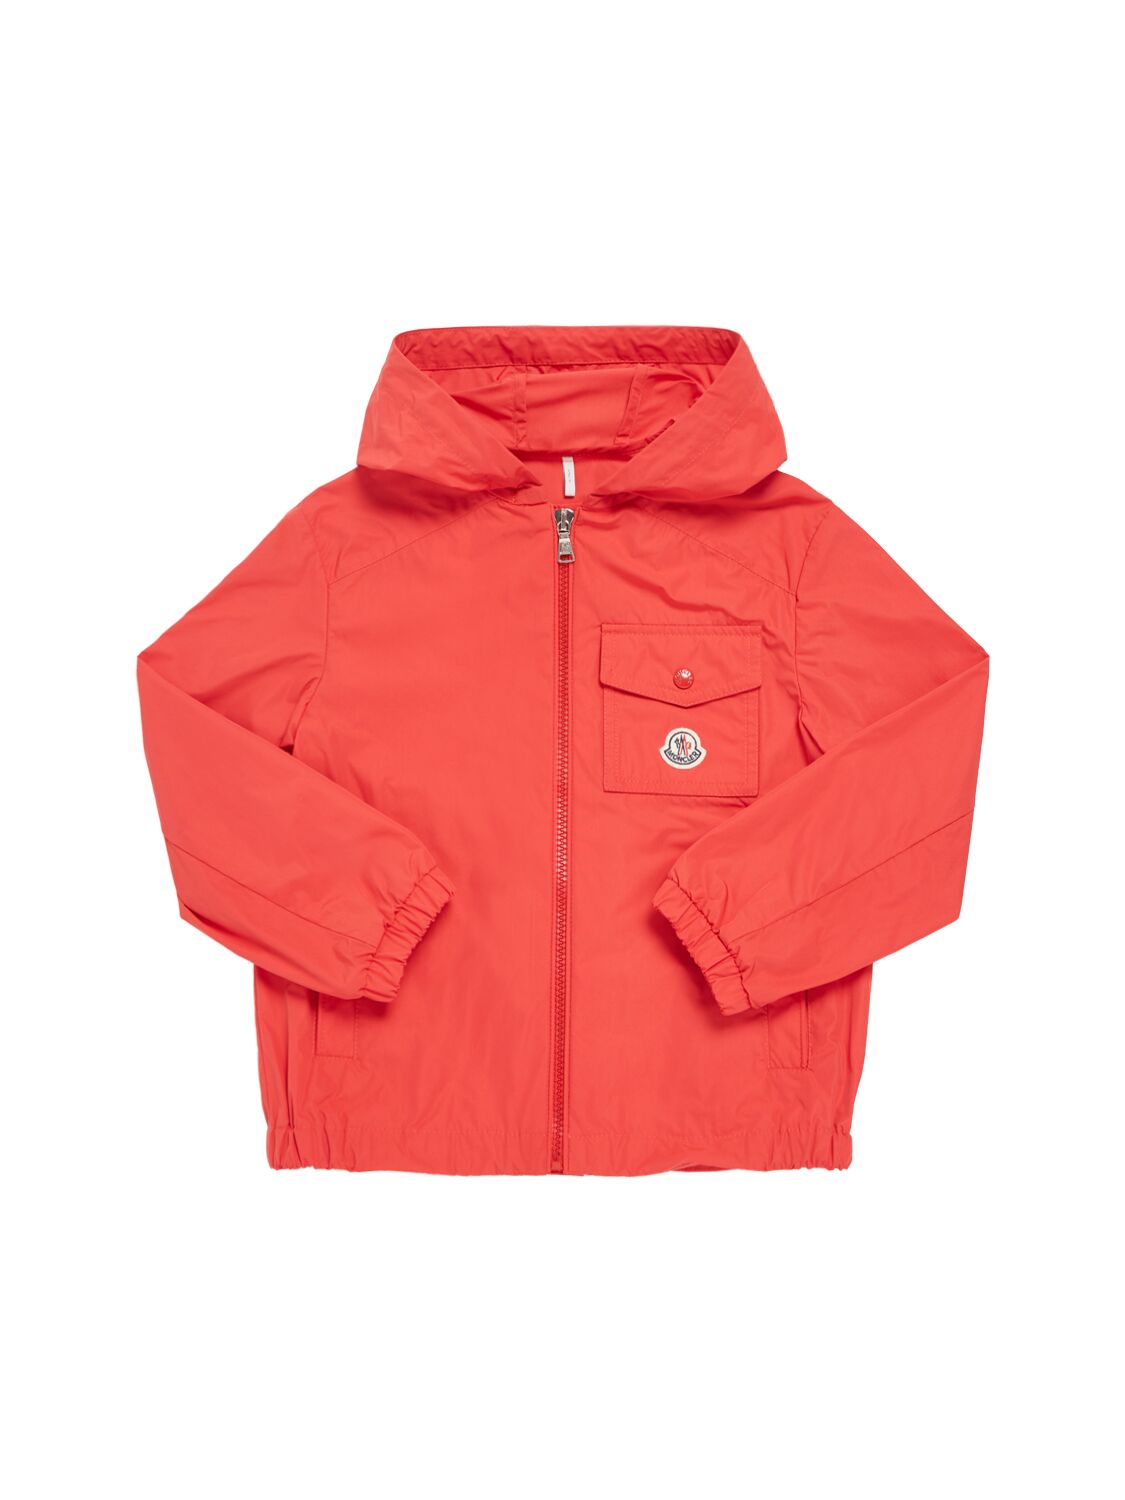 Image of Ebo Tech Rainwear Jacket